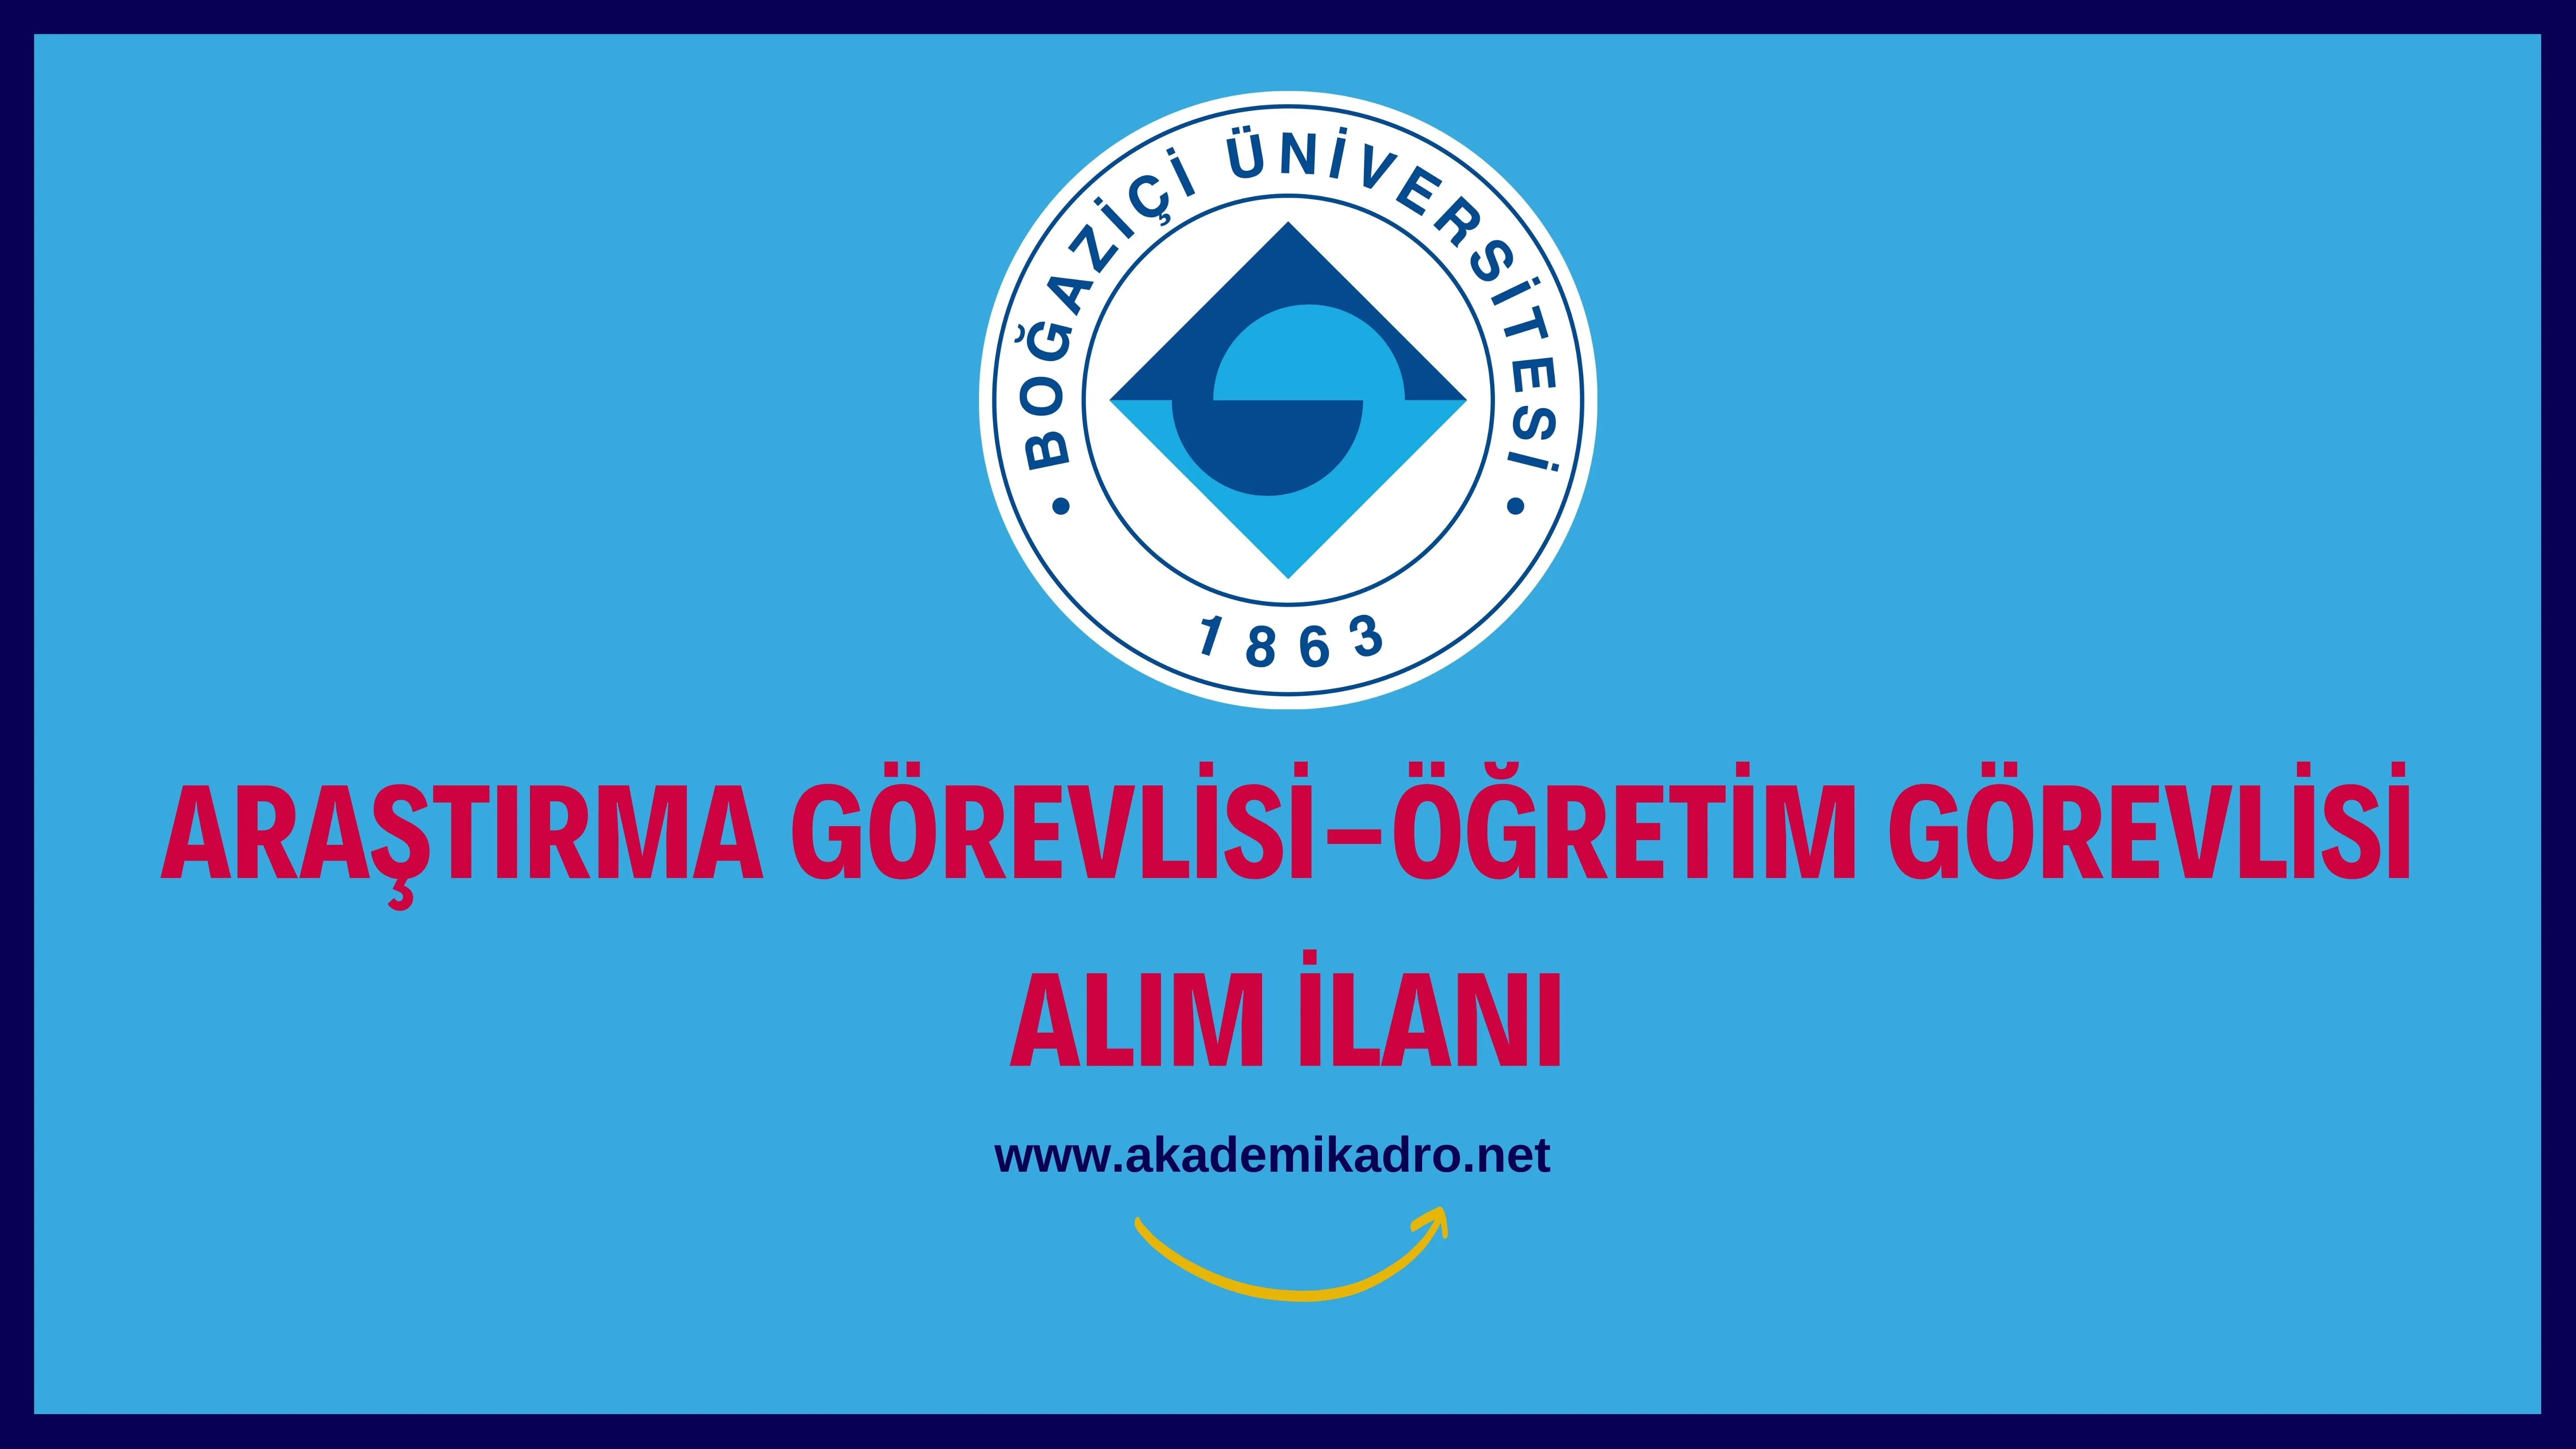 Boğaziçi Üniversitesi 13 Araştırma Görevlisi ve 4 Öğretim Görevlisi alacaktır. Son başvuru tarihi 13 Eylül 2022